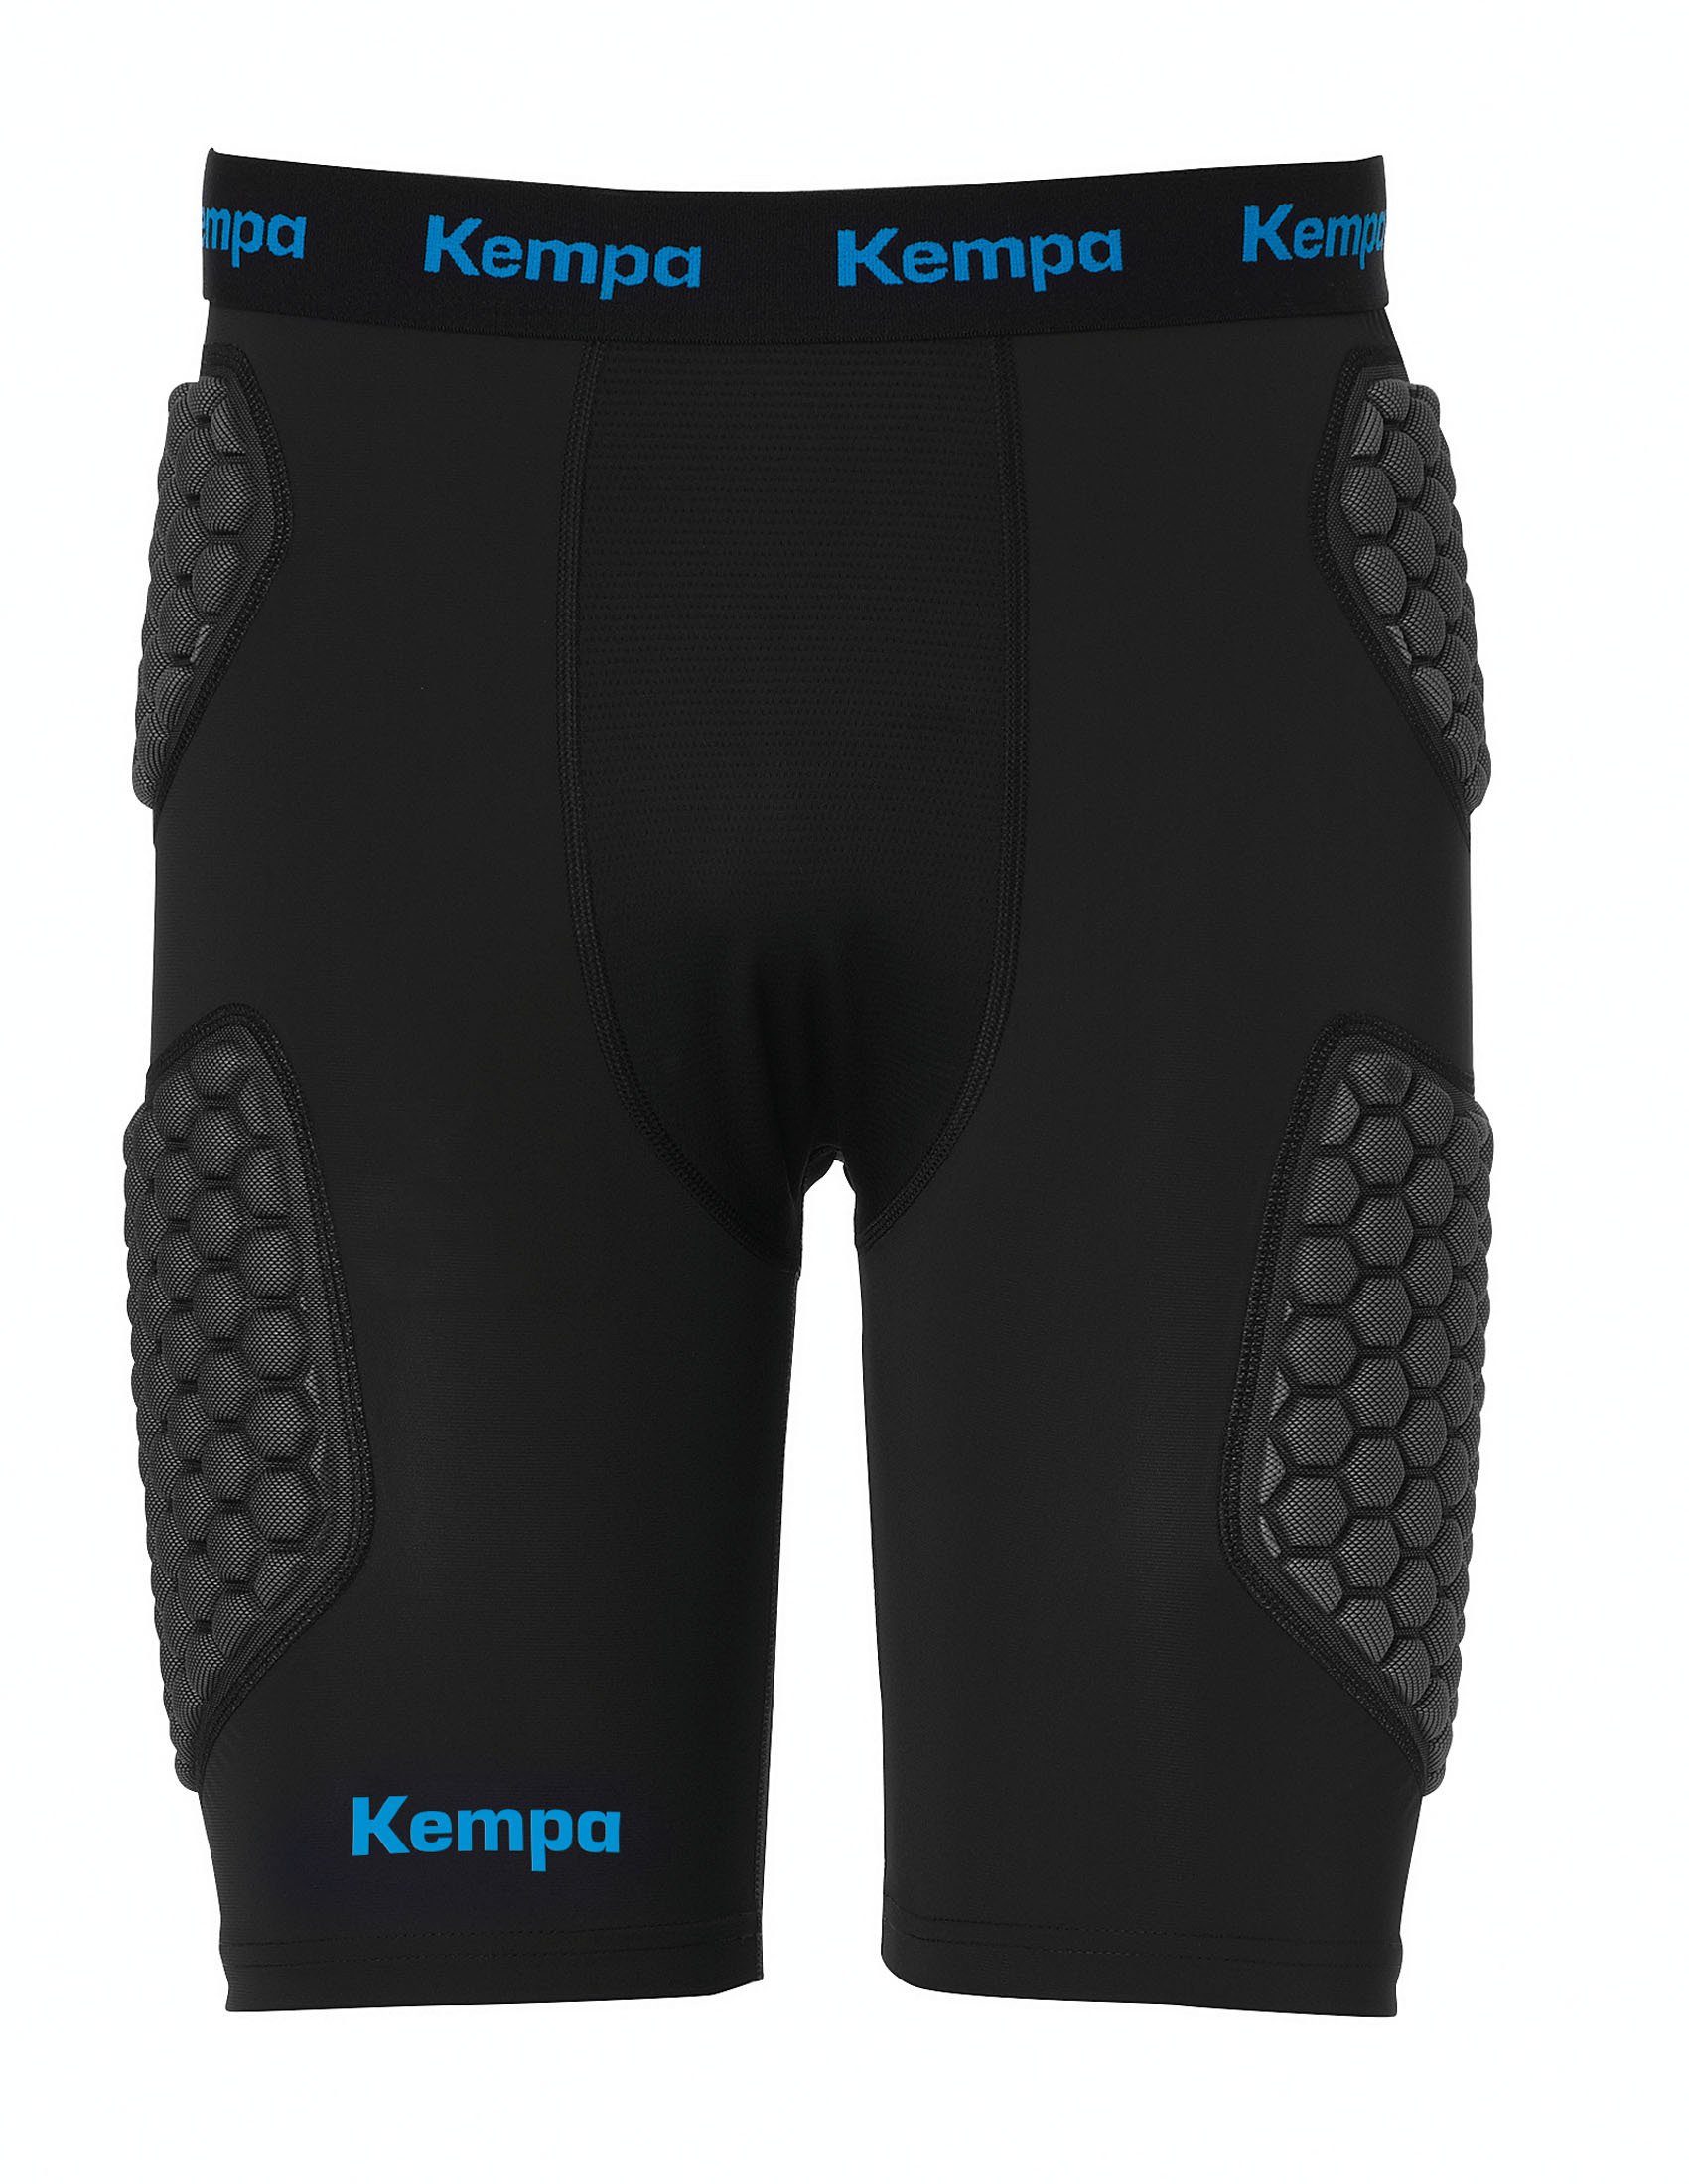 PROTECTION SHORTS, Protektorenshorts Kempa elastisch Protection Kempa Shorts